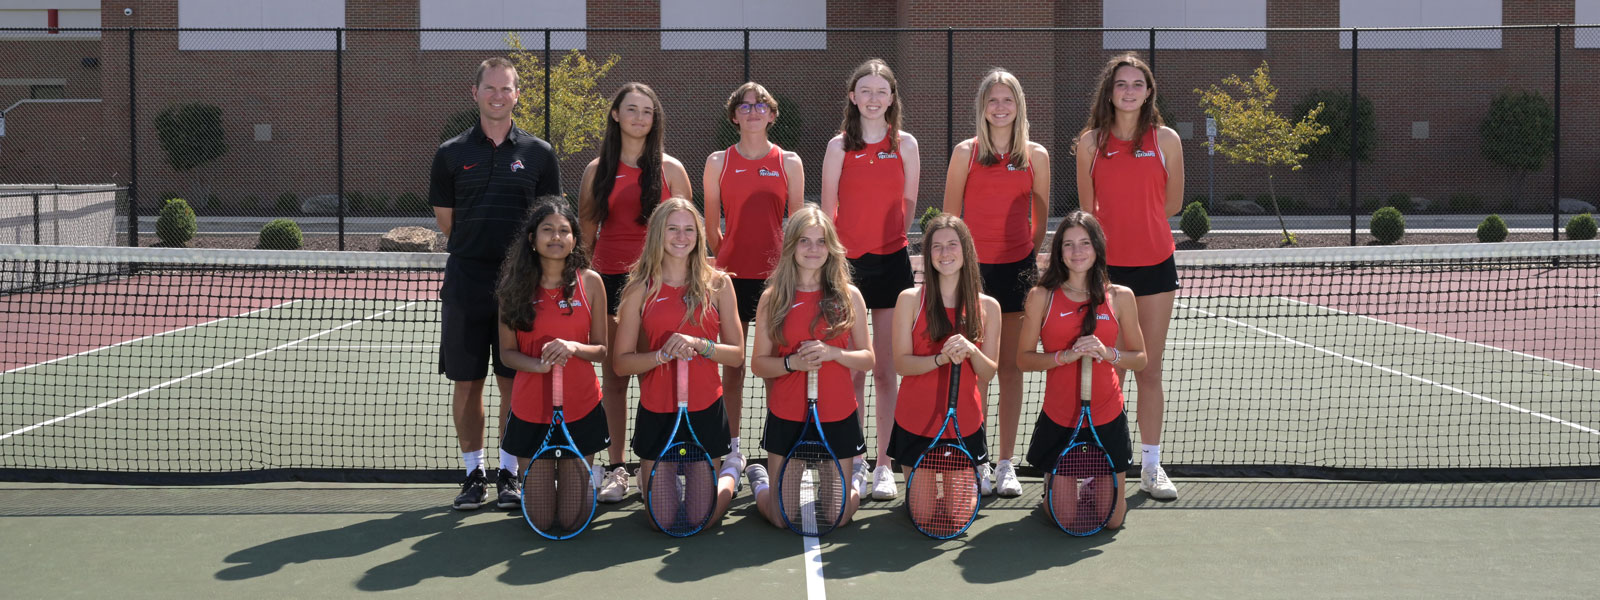 Girls' tennis team